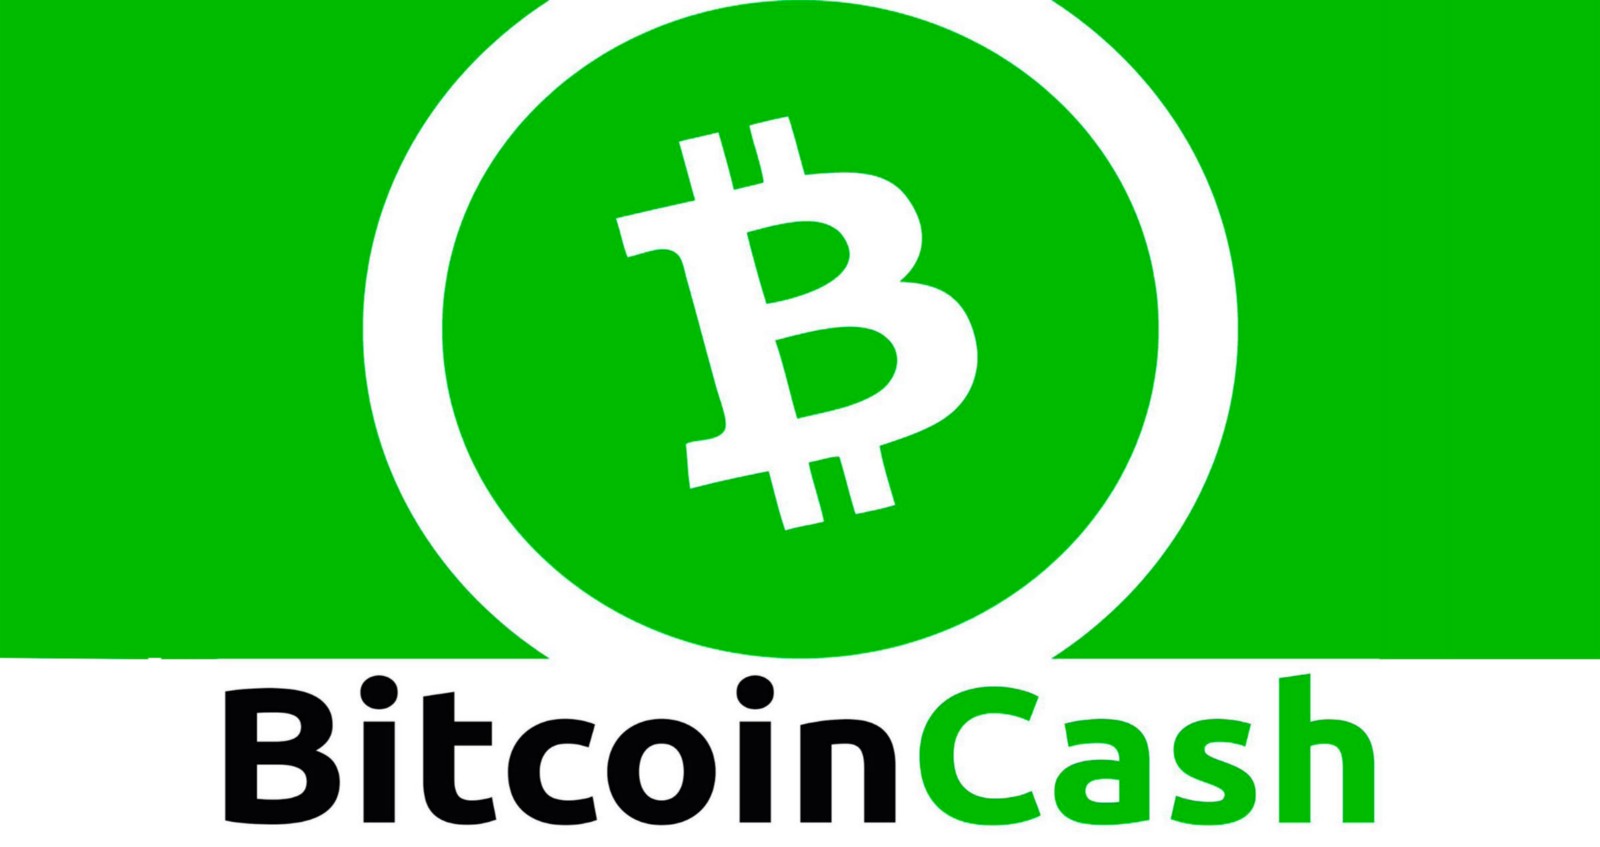 Green Bitcoin Cash logo